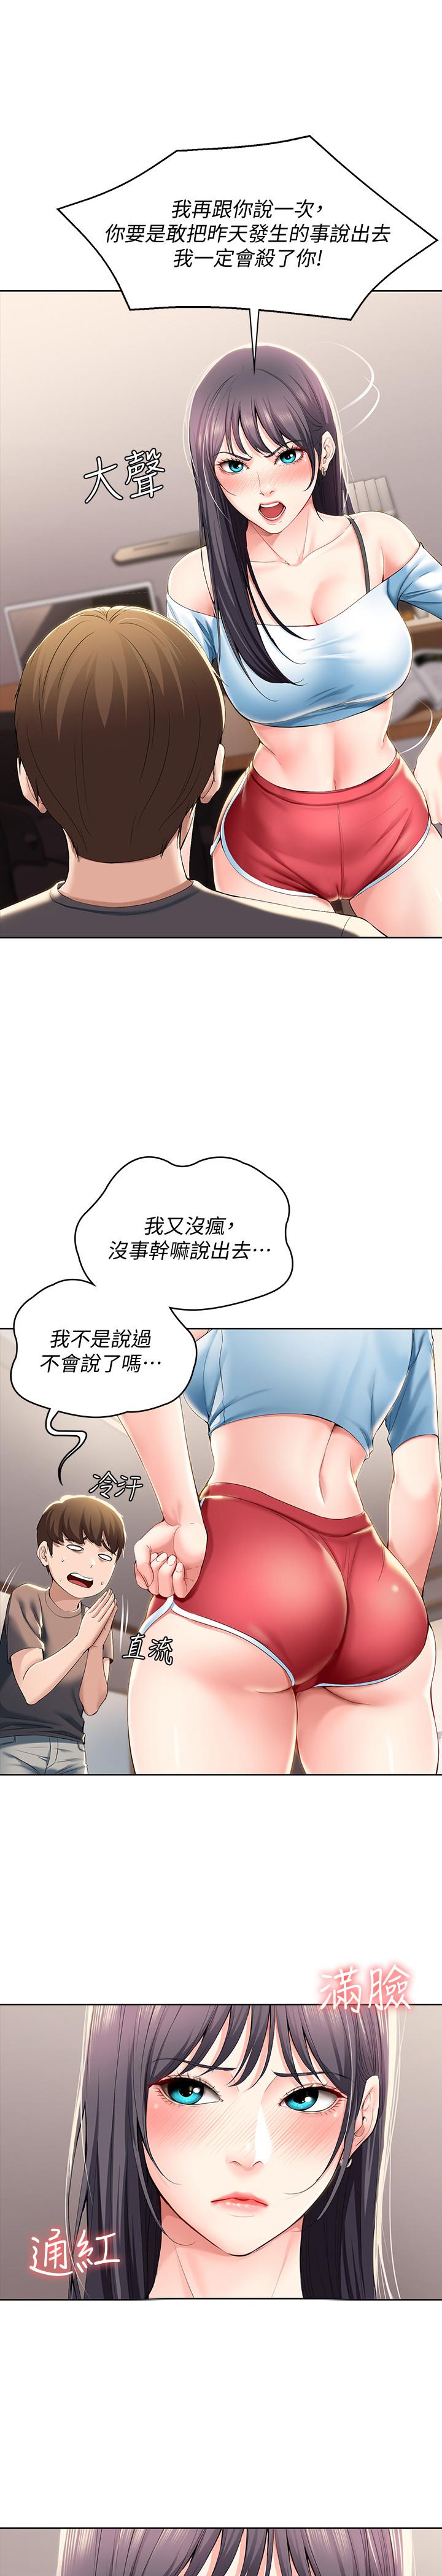 韩国污漫画 寄宿日記 第28话-充满诱惑的家 29